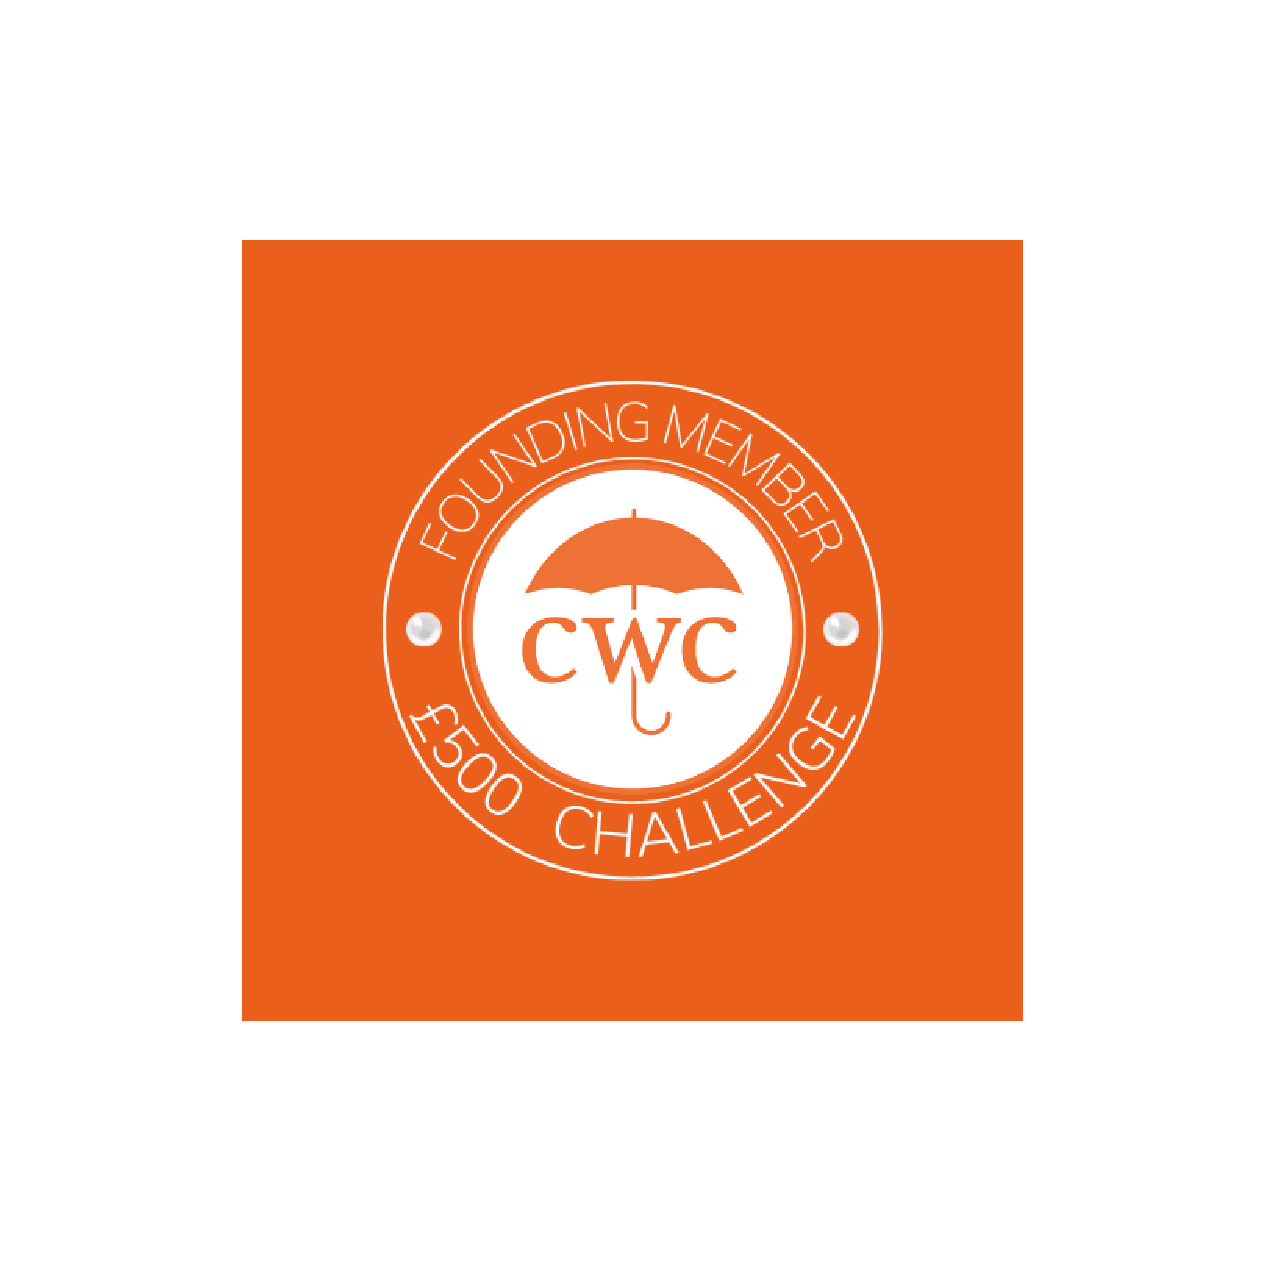 CWC founding member